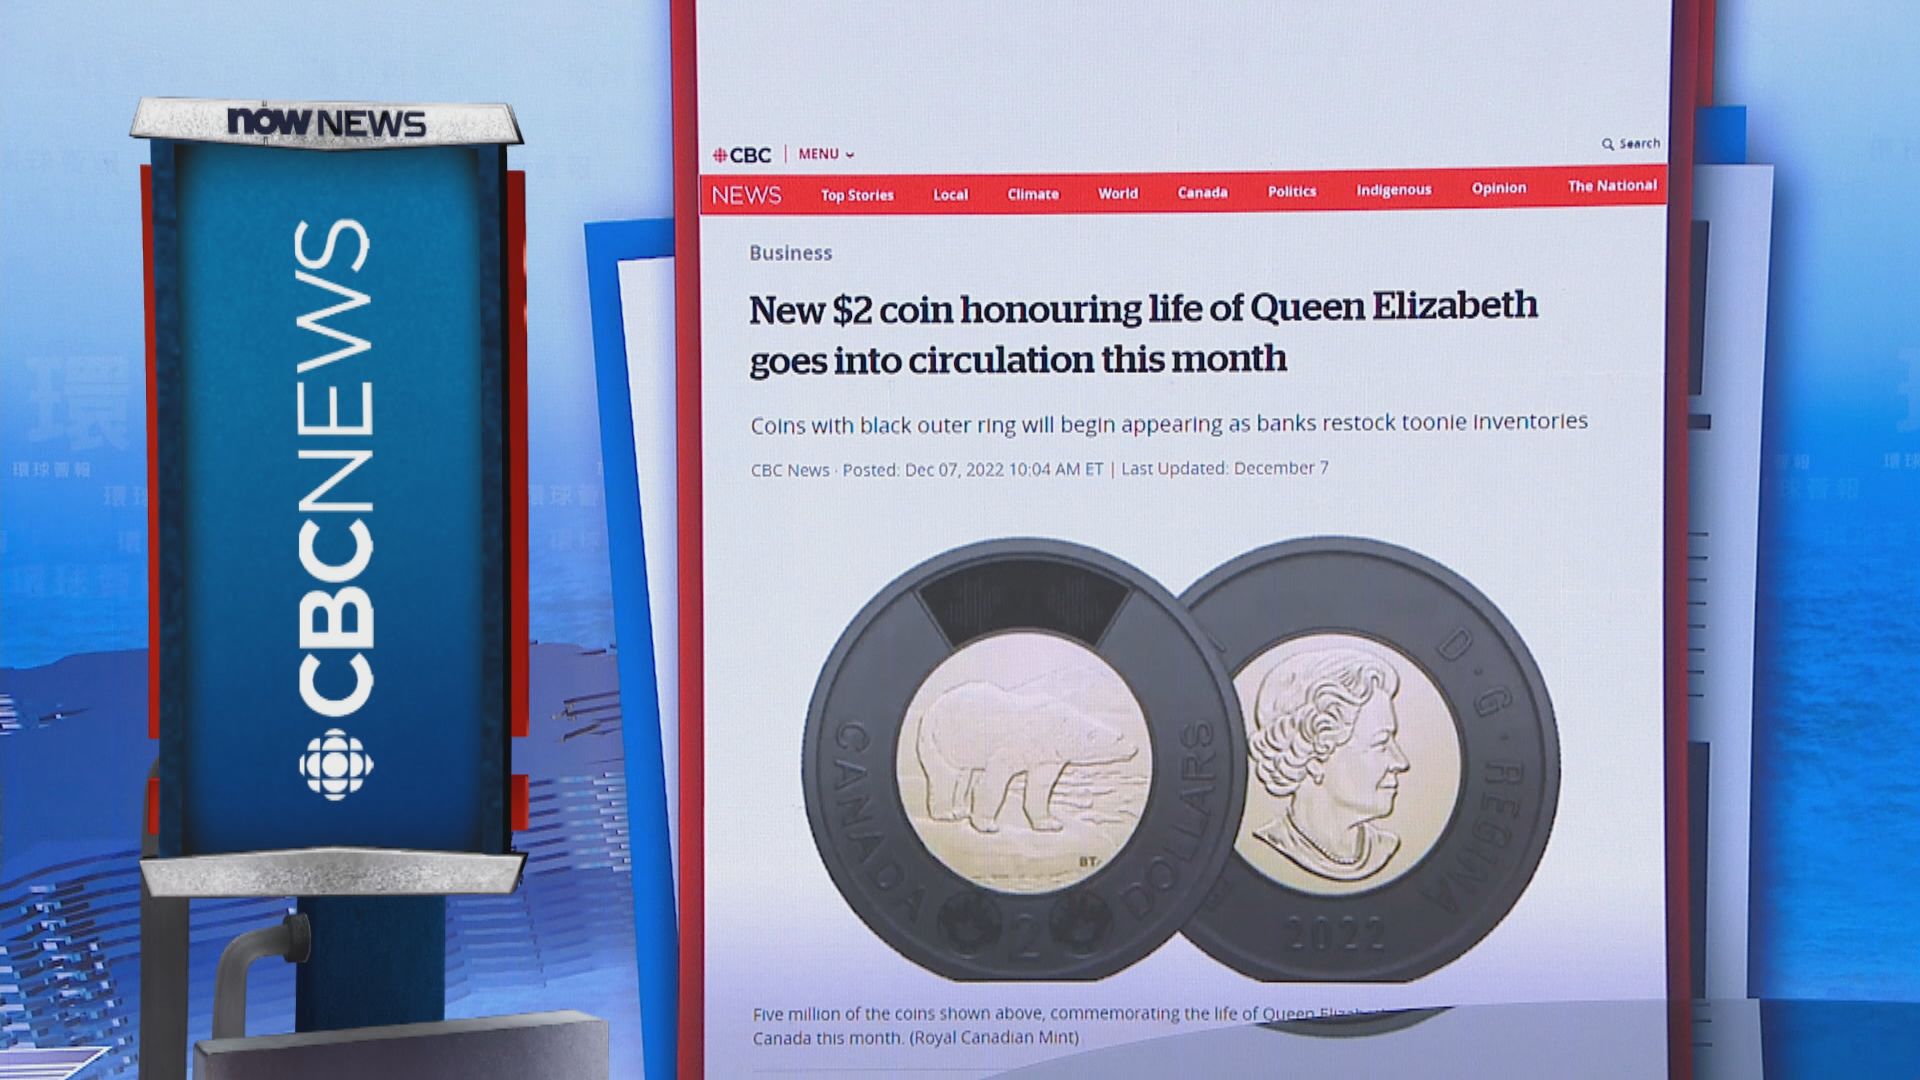 【環球薈報】加拿大推出新二加元硬幣悼念伊利沙伯二世